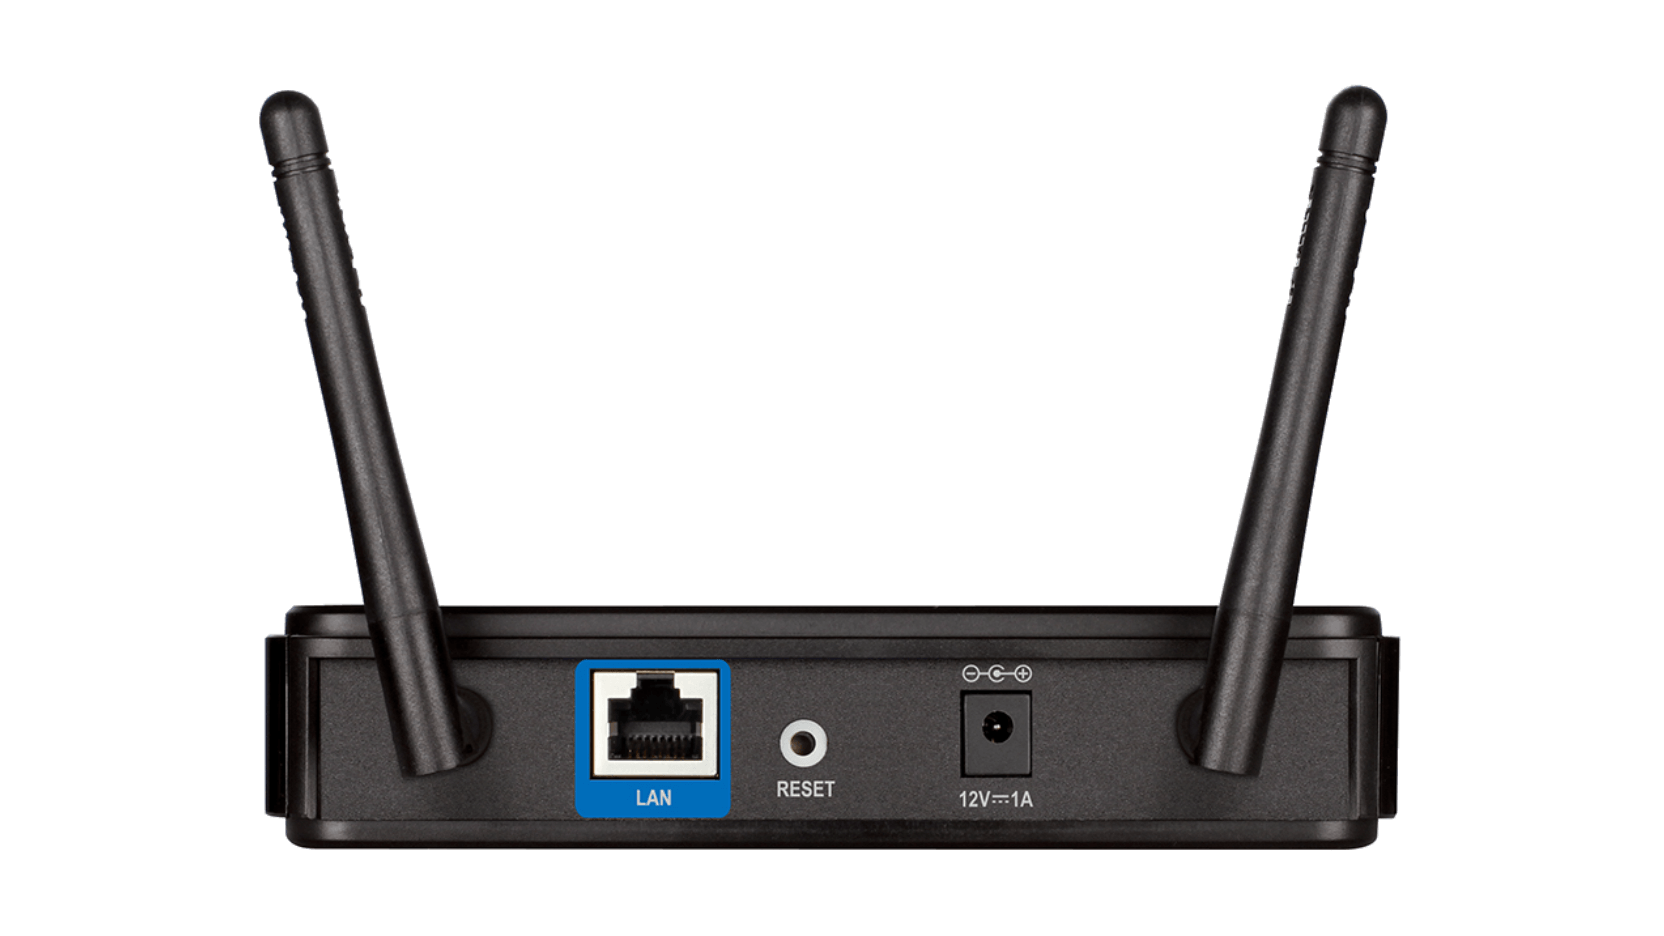 DAP-2310 Wireless N Access Point | D-Link